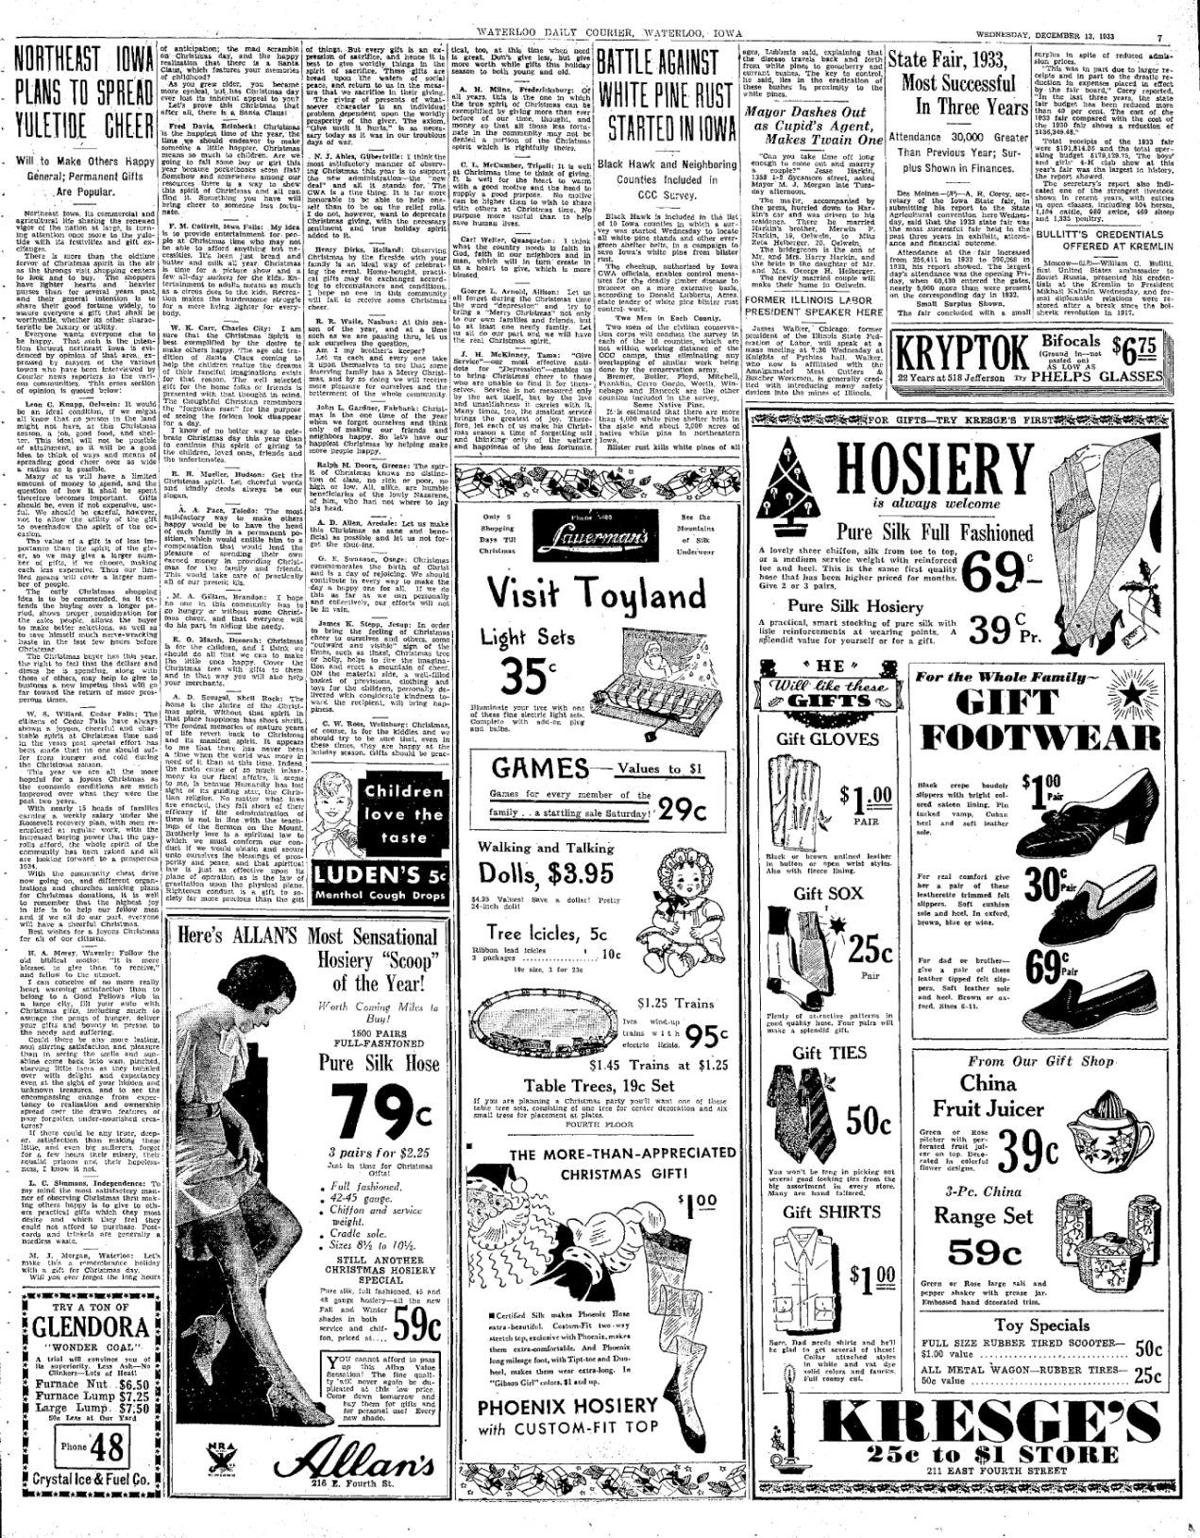 1930s ad